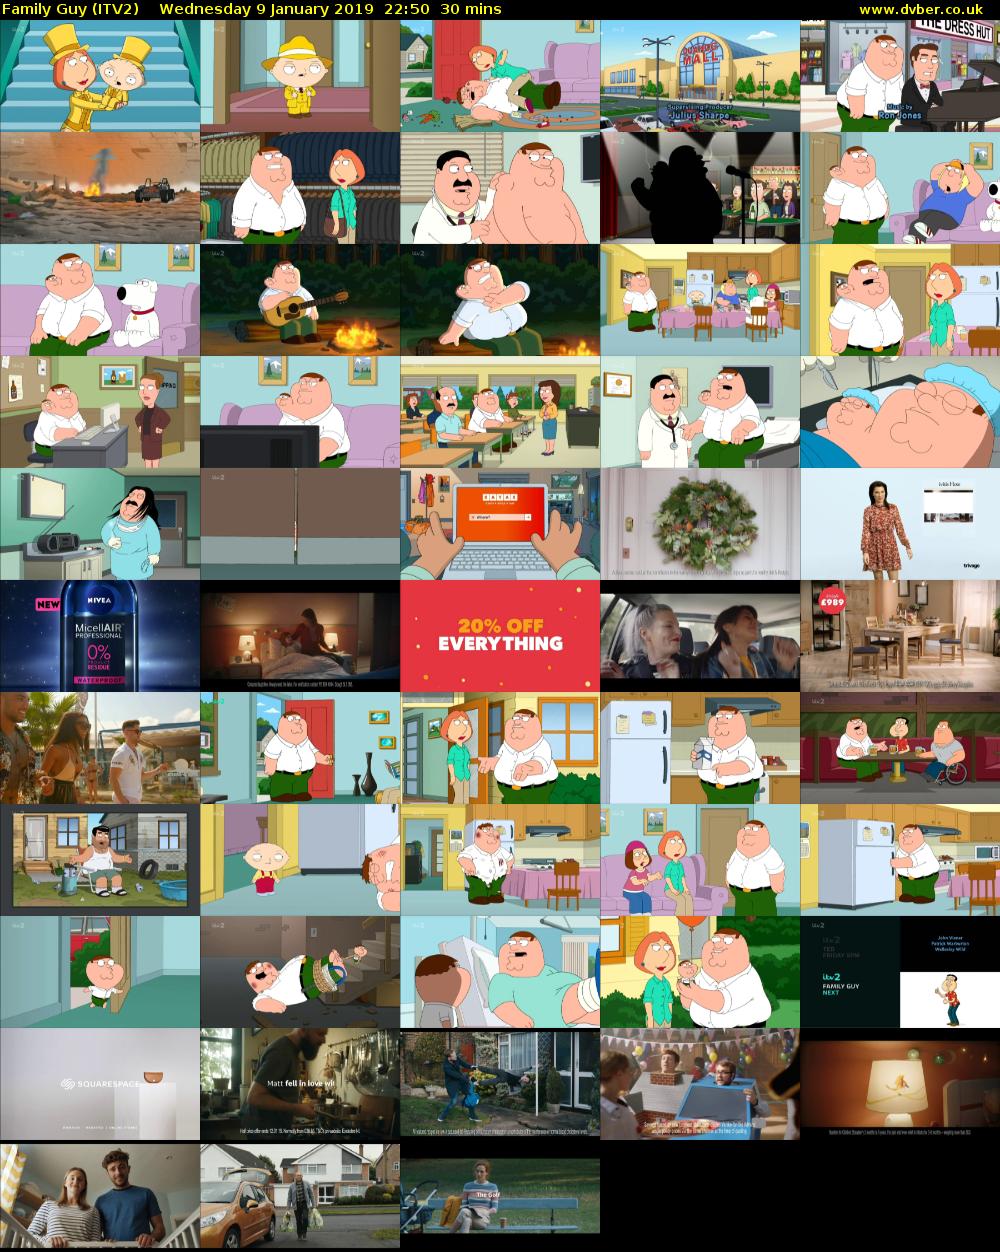 Family Guy (ITV2) Wednesday 9 January 2019 22:50 - 23:20